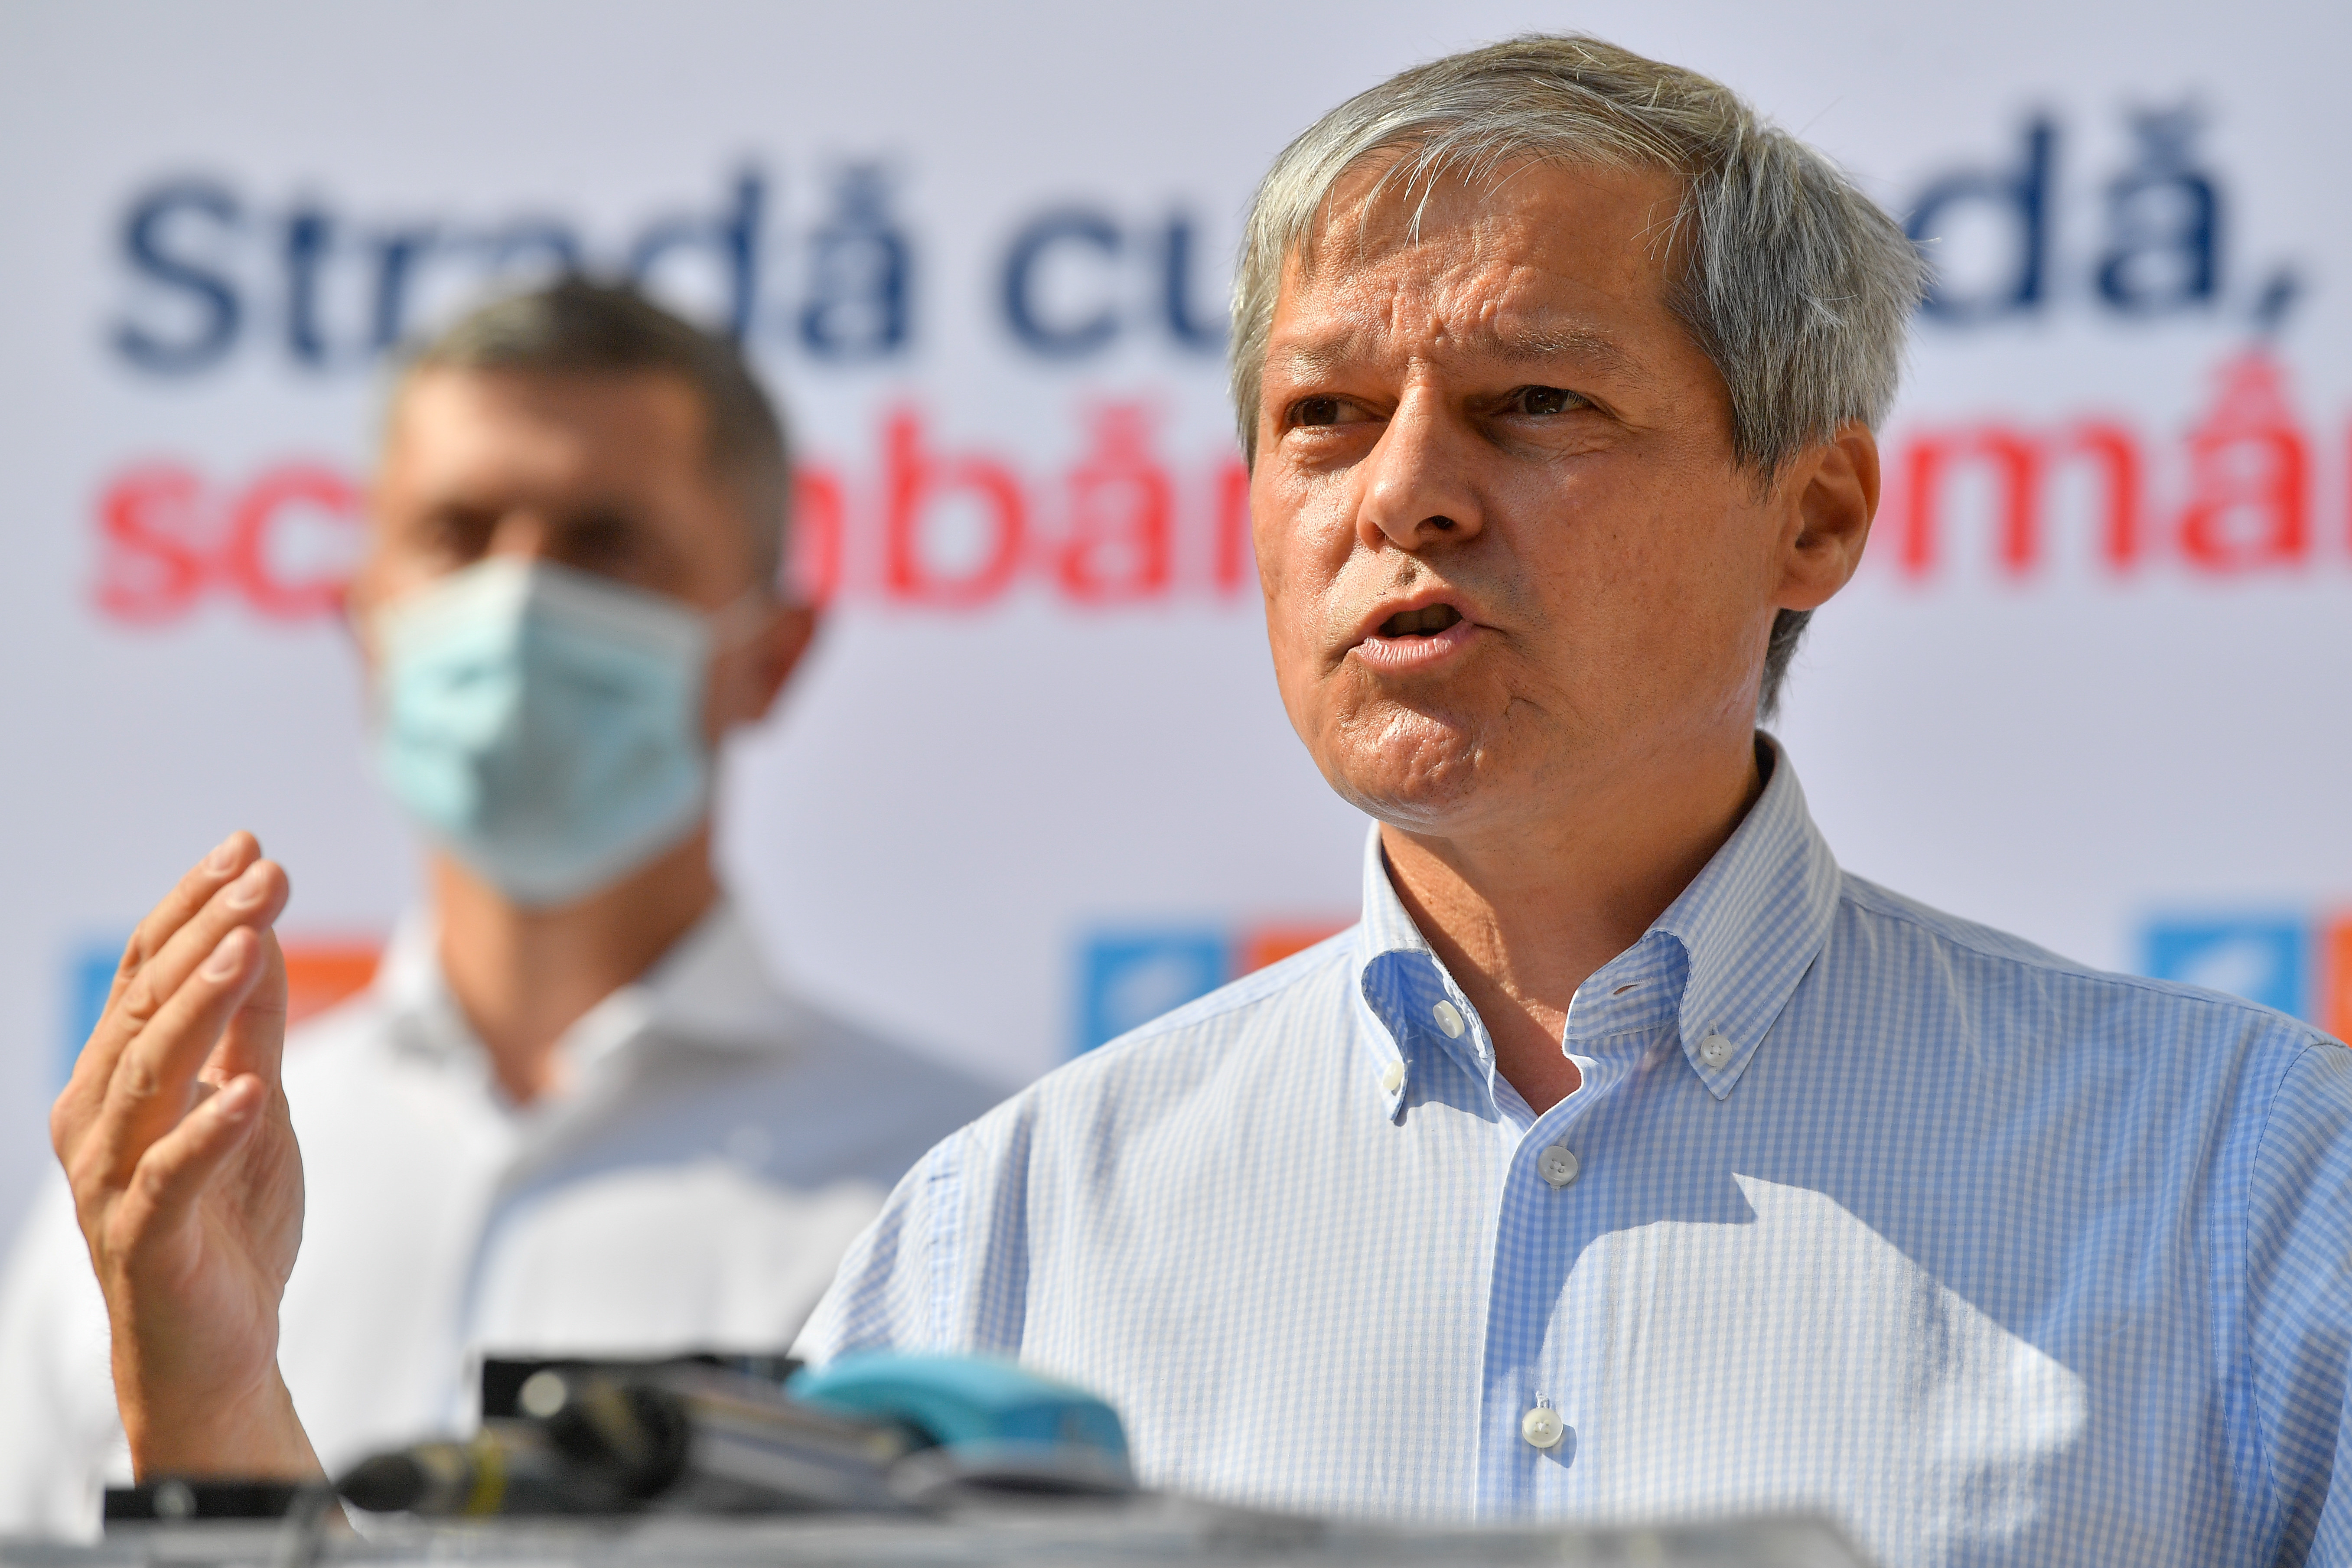 Cioloș, despre ministrul Florin Roman: ”Un plagiator dovedit”, ”nu are ce să caute în Guvern”